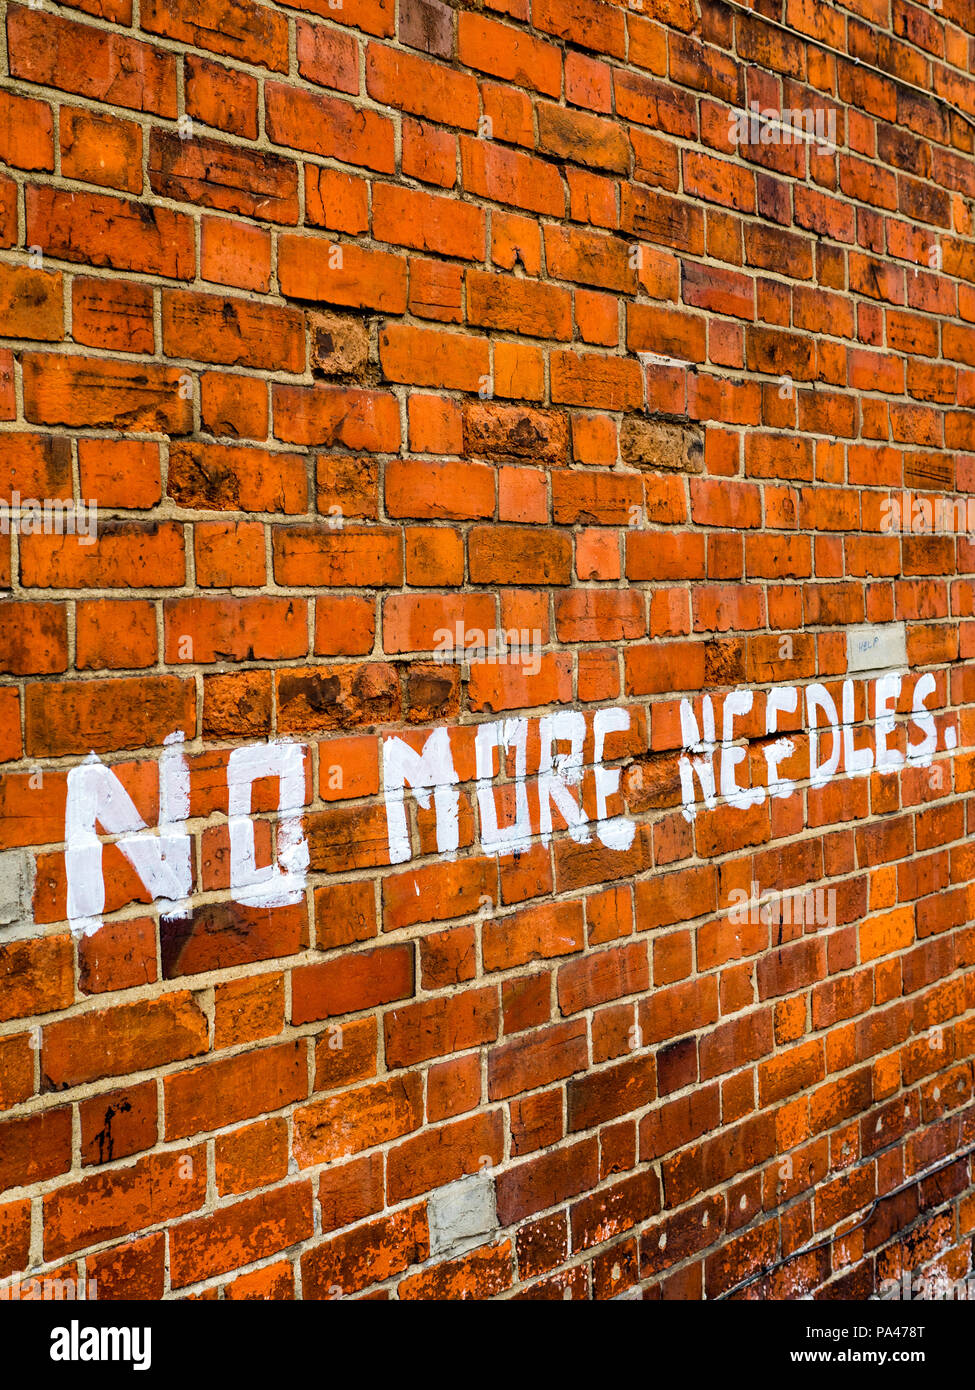 Bewohner verwenden Sie die Graffiti, die Drogenkonsumenten, Cambridge st abzuschrecken, Reading, Berkshire, England, UK, GB. Stockfoto